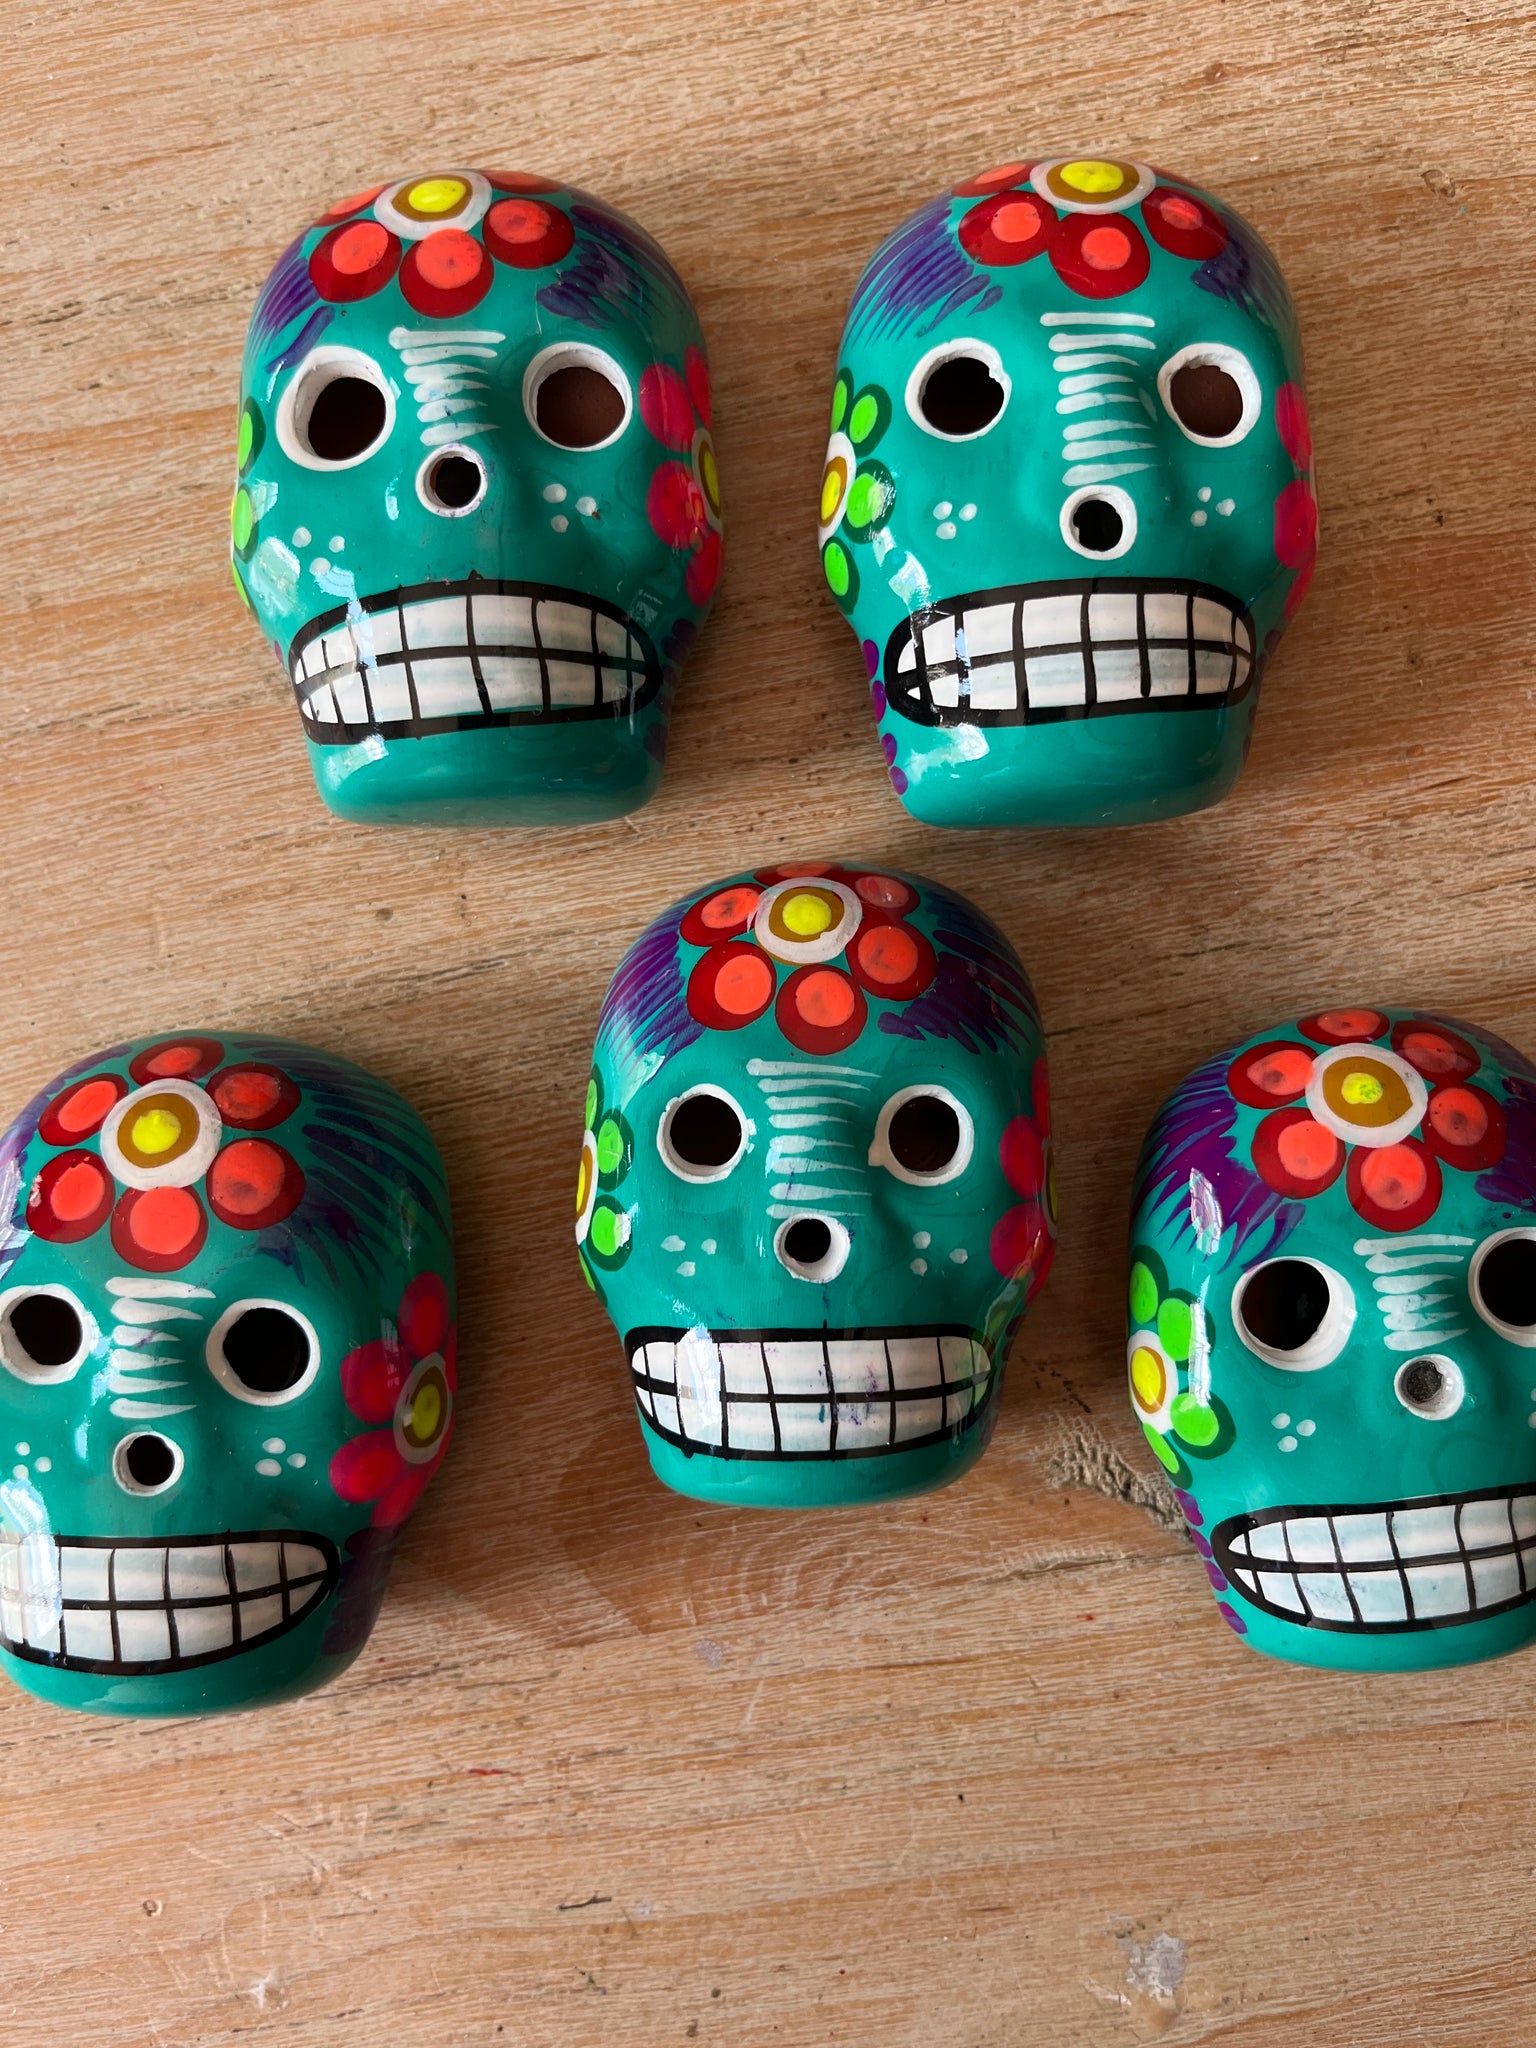 Calavera Ceramic Magnet Skulls